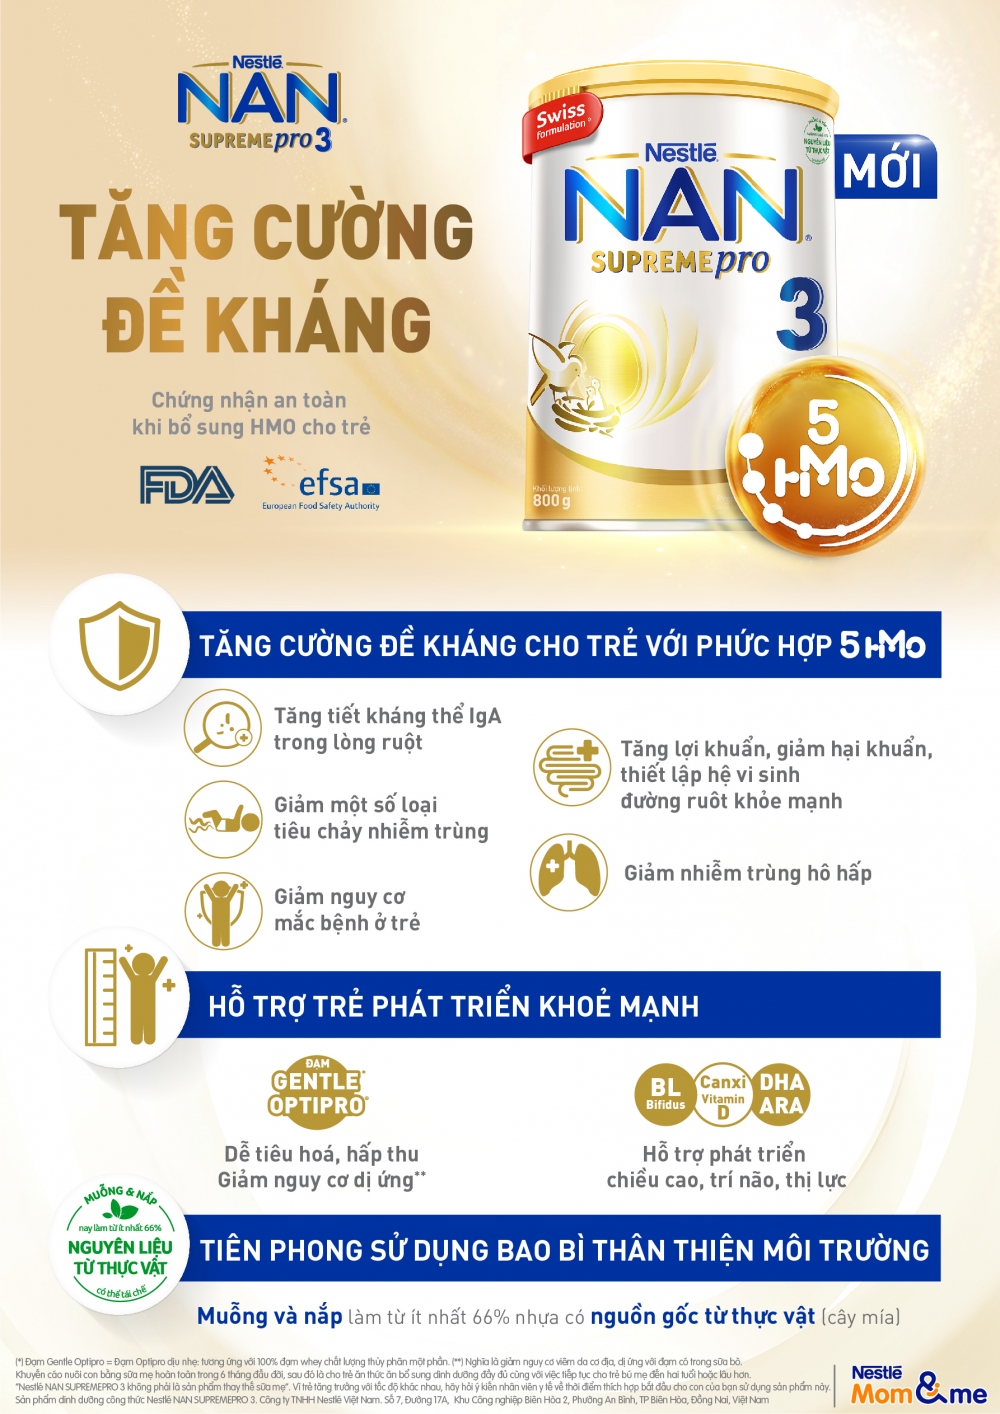 Nestlé Việt Nam ra mắt sản phẩm NAN SUPREME PRO 3, giúp trẻ tăng cường sức đề kháng